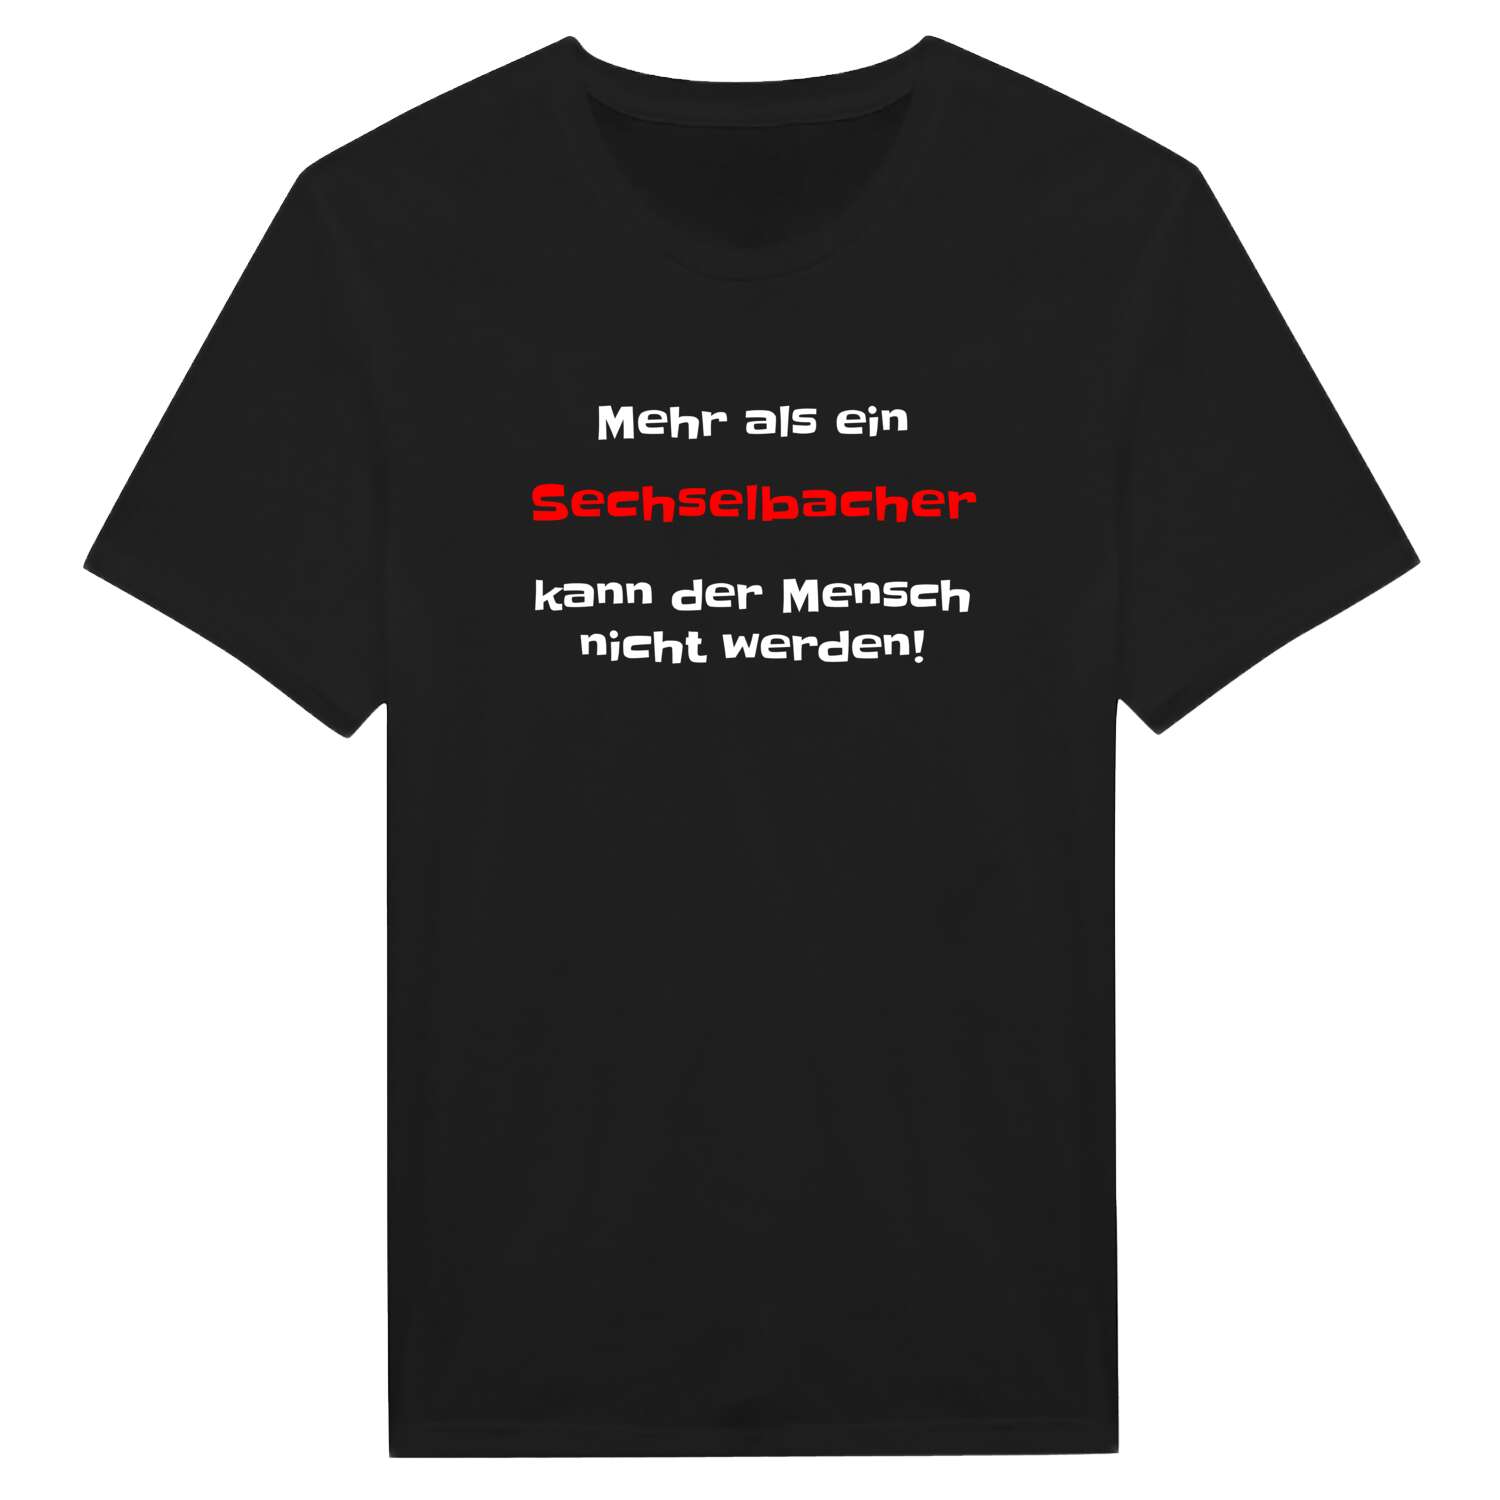 Sechselbach T-Shirt »Mehr als ein«